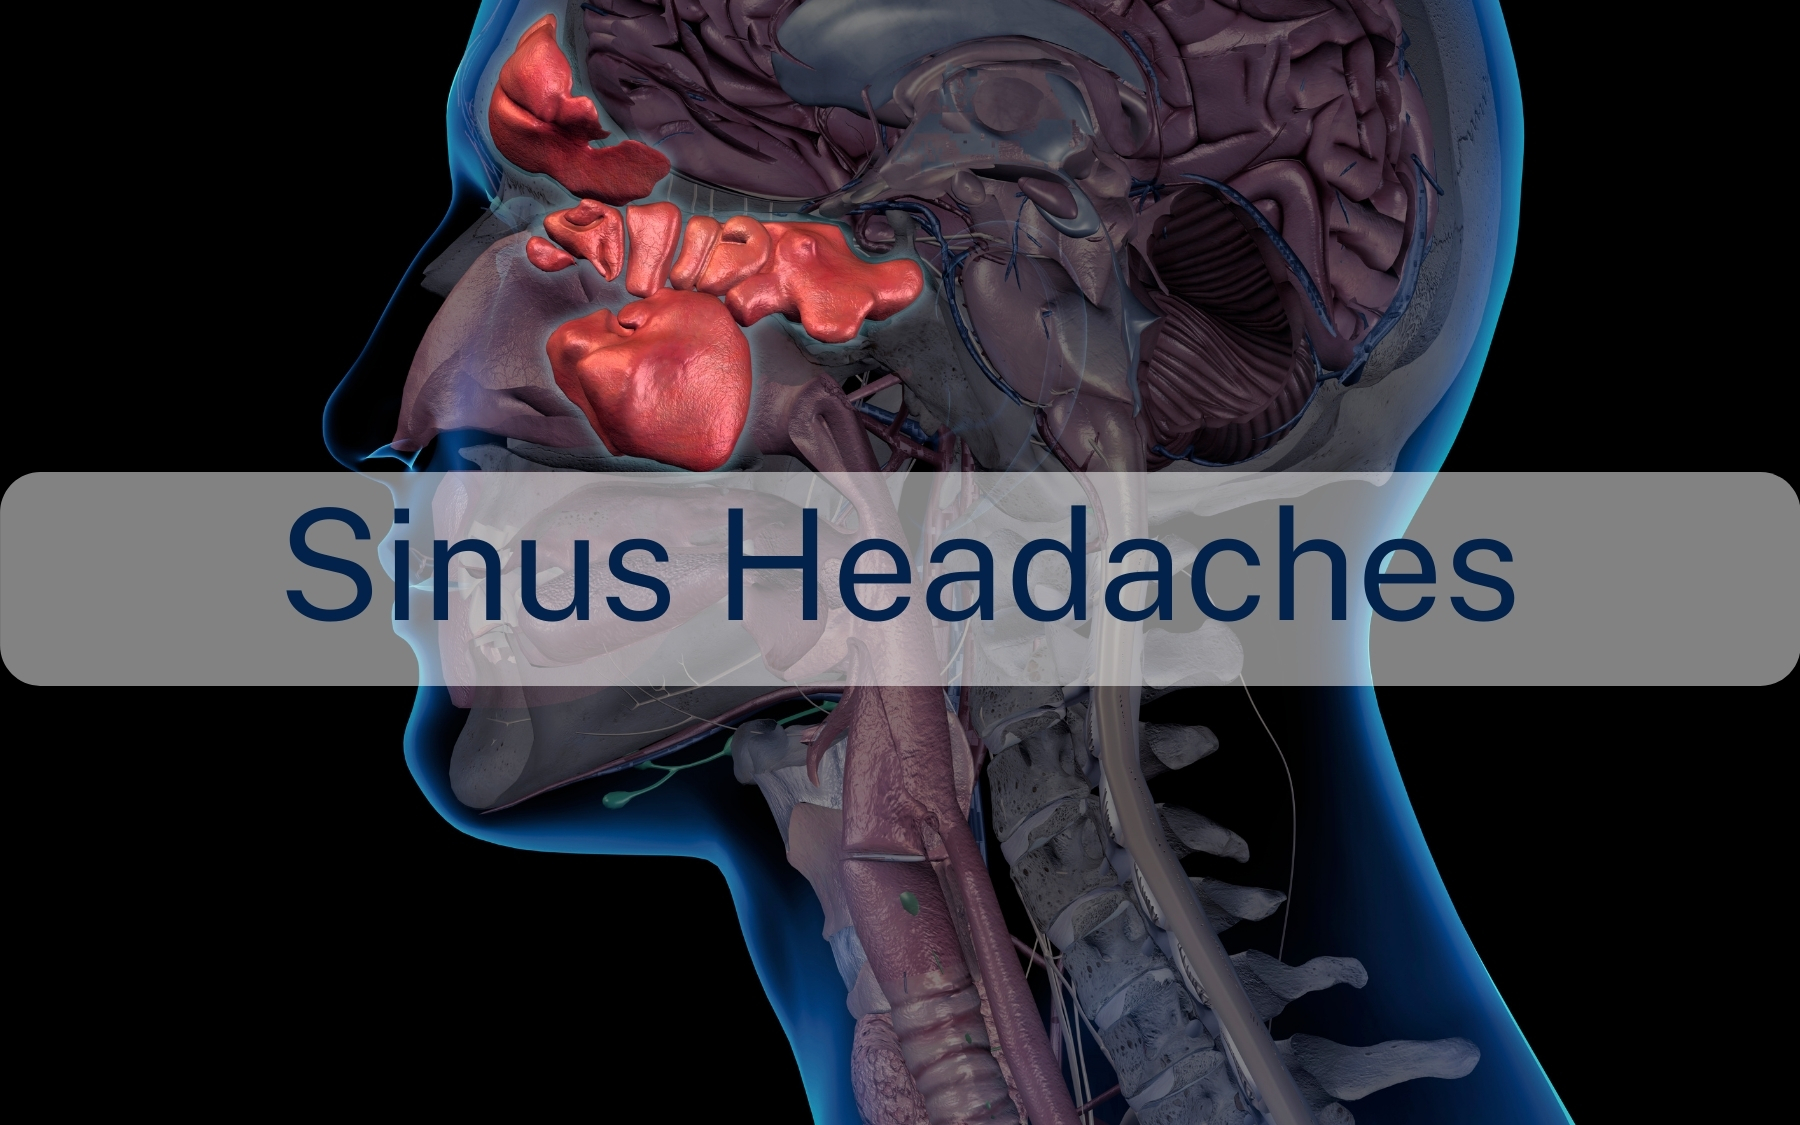 Sinus headaches